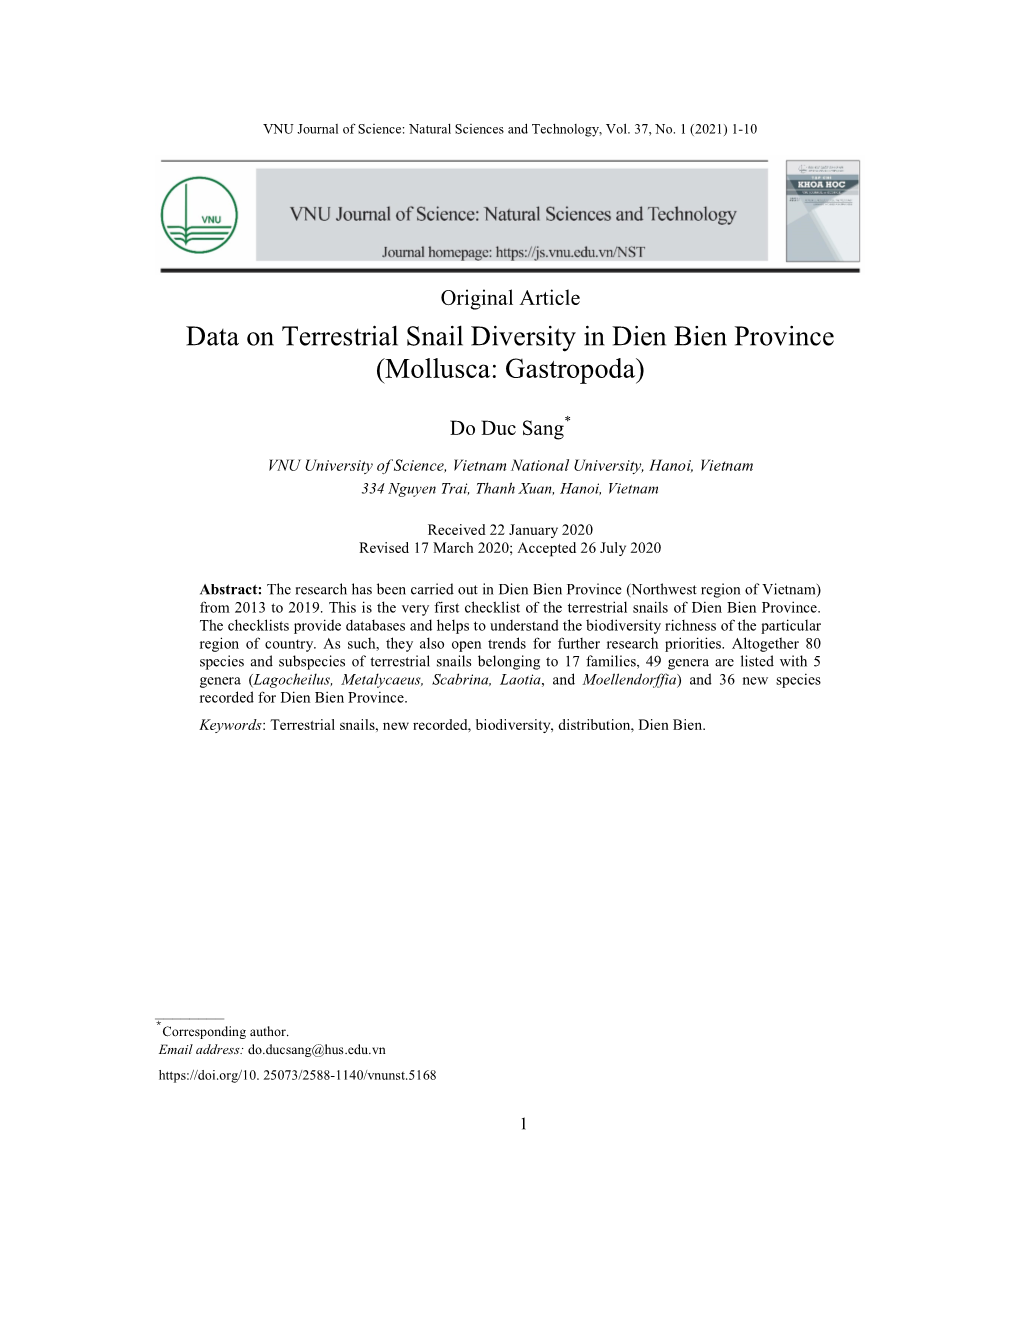 Data on Terrestrial Snail Diversity in Dien Bien Province (Mollusca: Gastropoda)